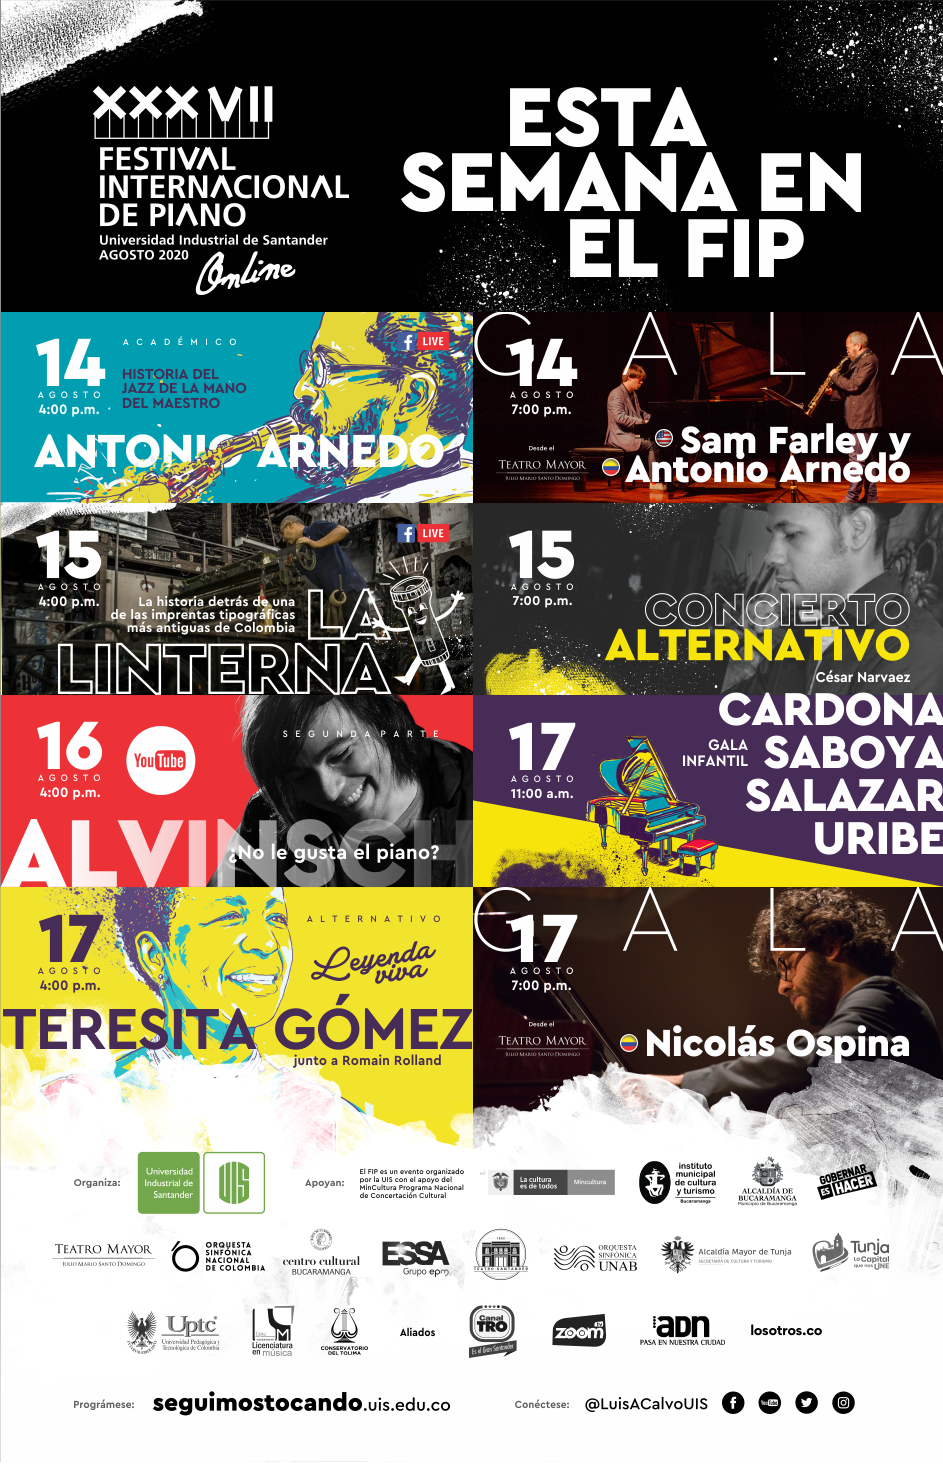 imagen promo #SeguimosTocando XXXVII Festival Internacional de Piano UIS